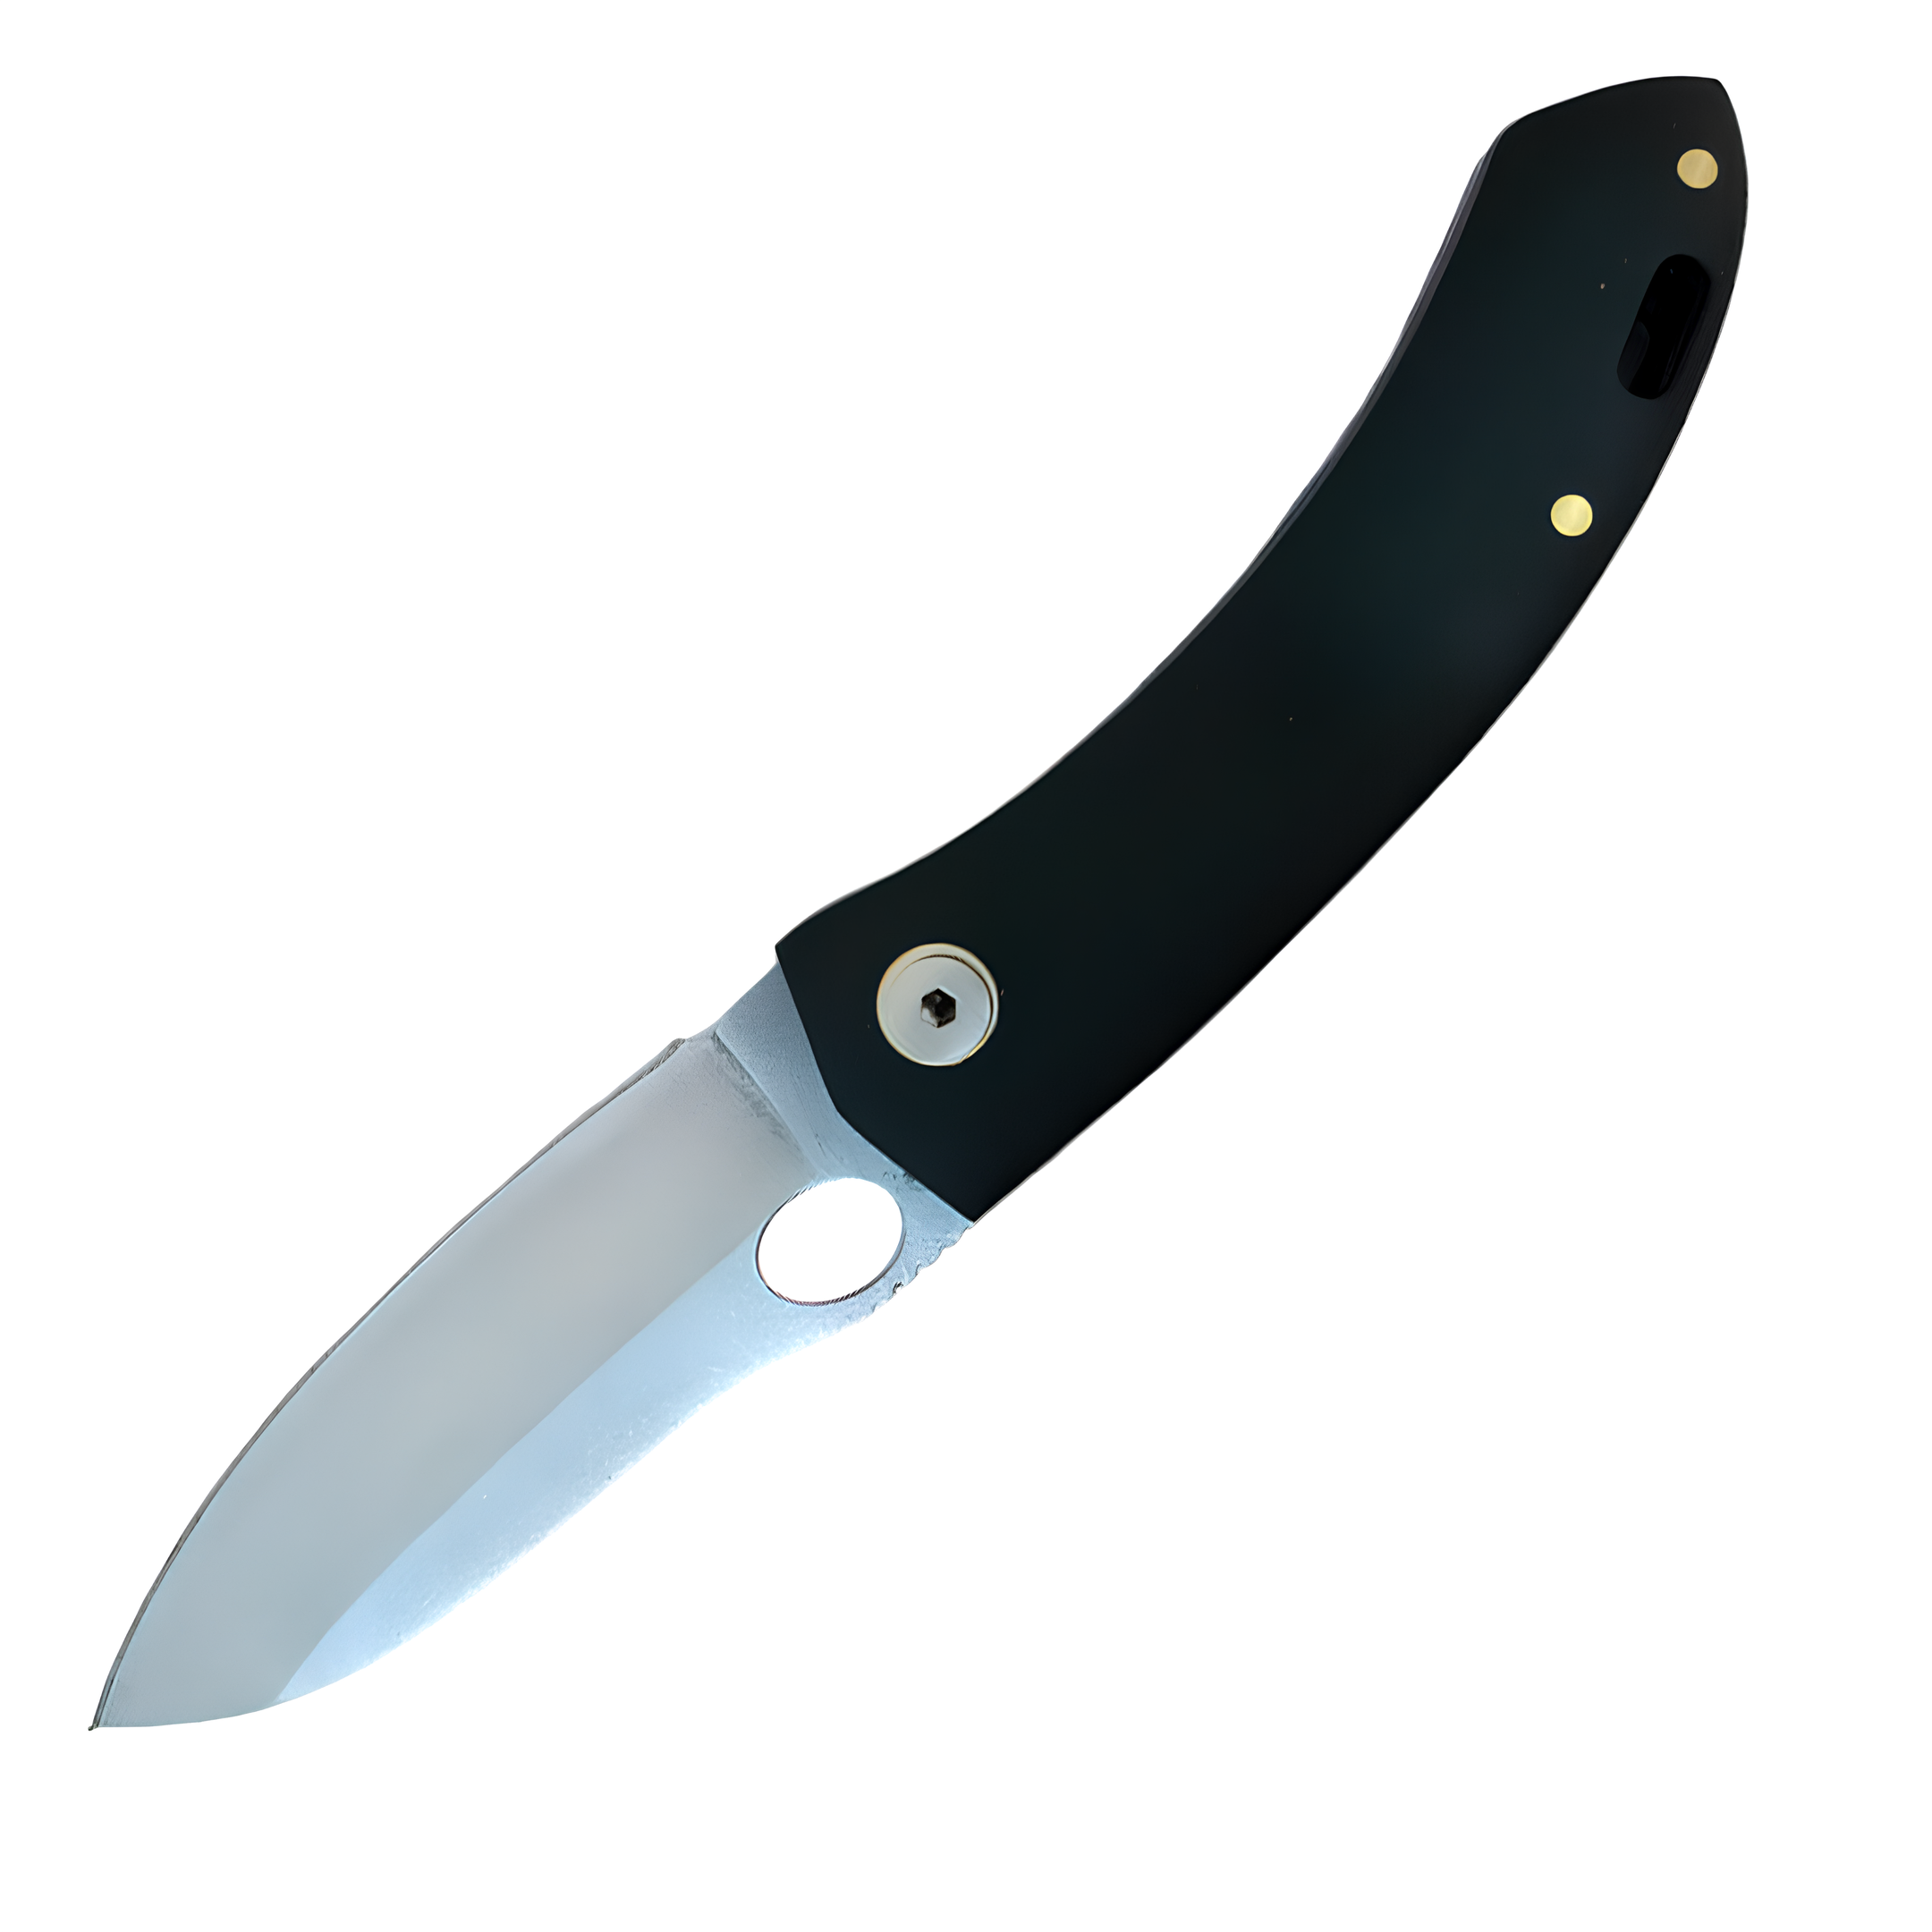 Kam Knife - T10 - 4116 Steel - Black Handle - Pocket Knife